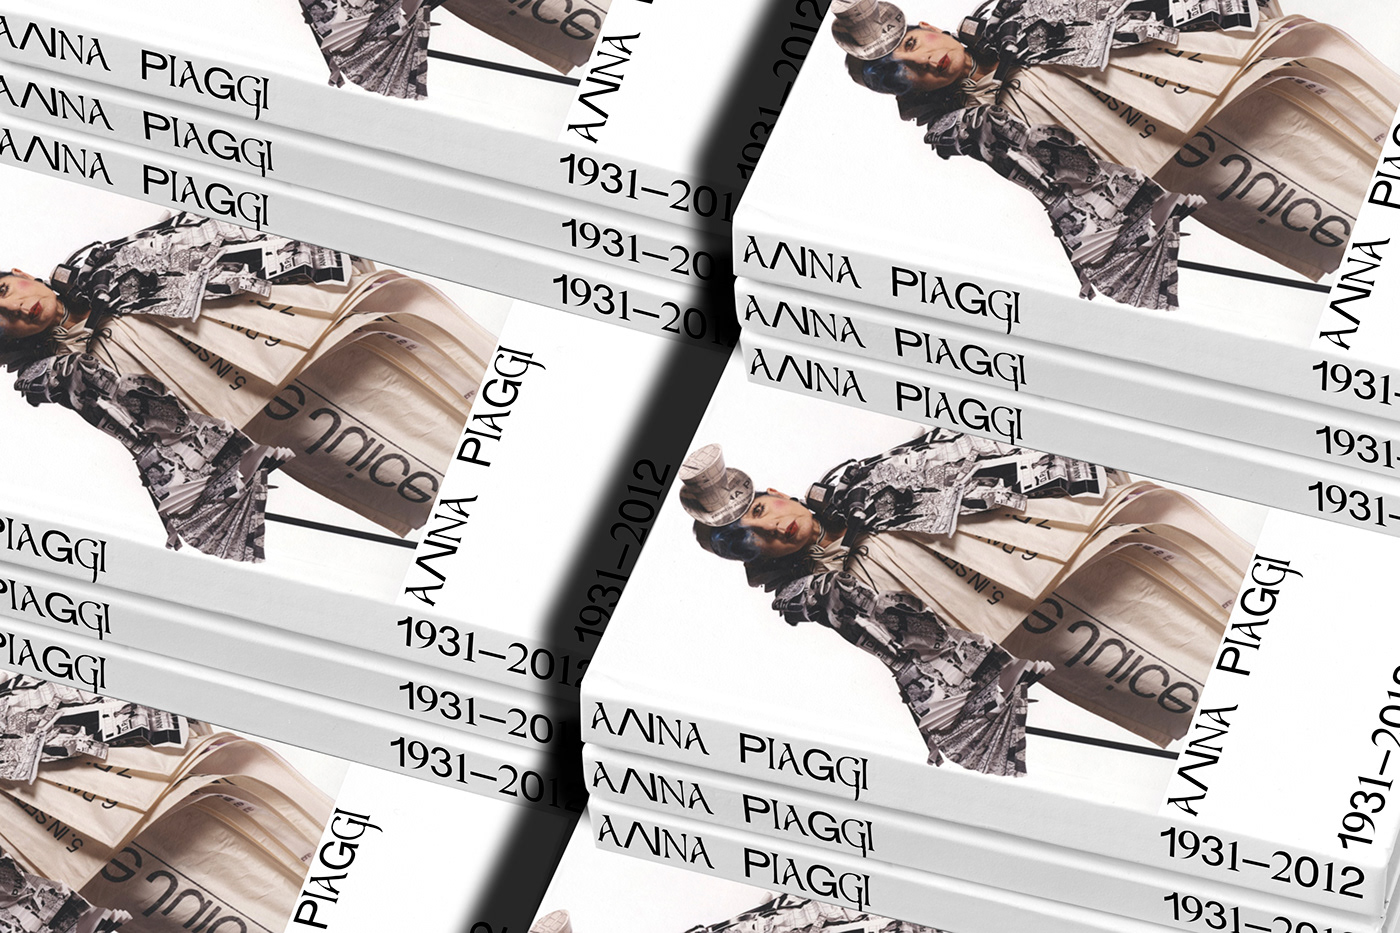 anna piaggi book book design design editorial Fashion  Italy milan milano moda